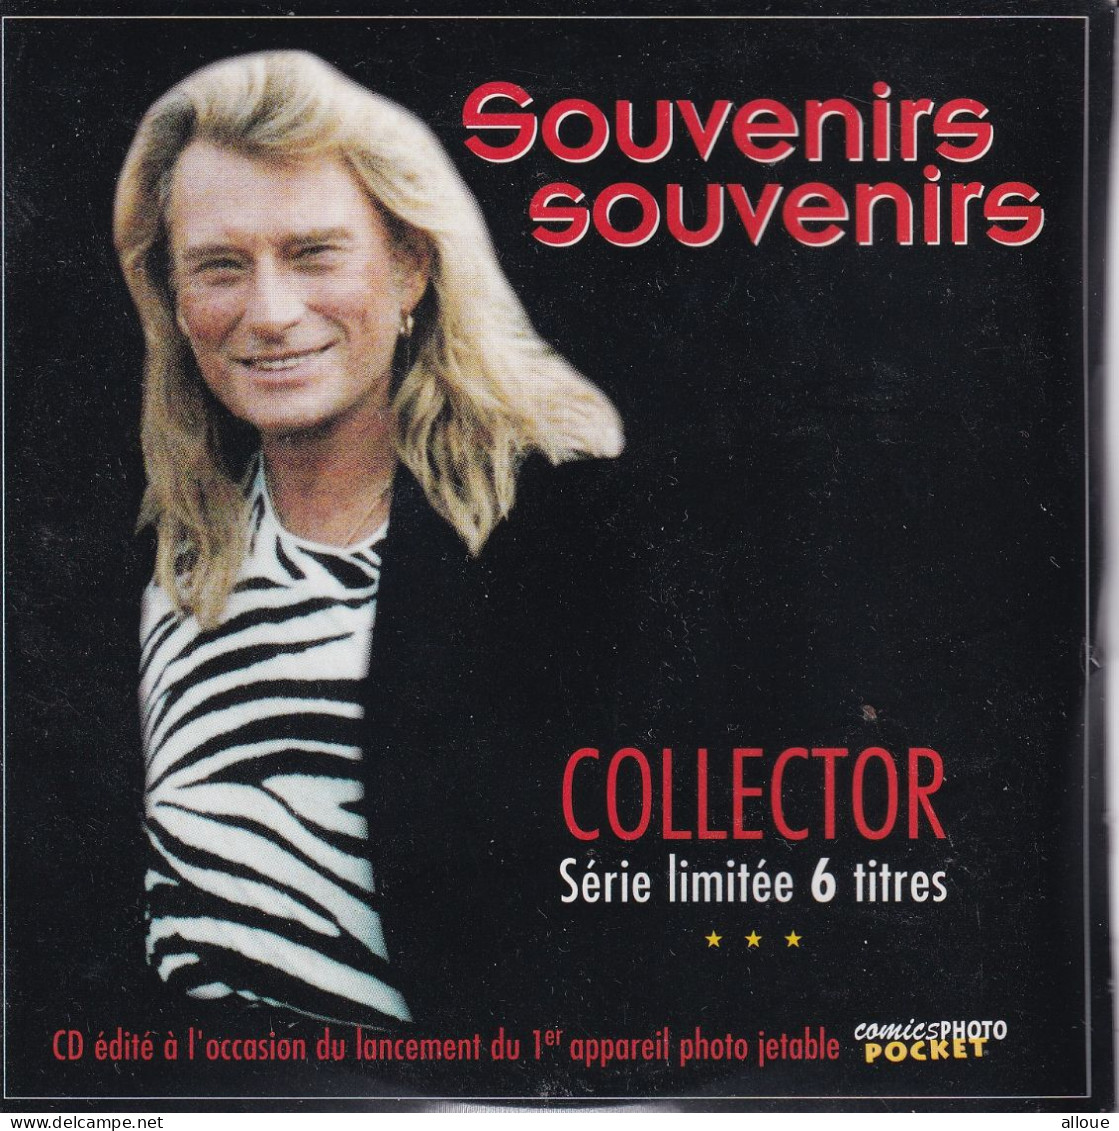 JOHNNY HALLYDAY SOUVENIRS SOUVENIRS - CD COLLECTOR SERIE LIMITEE 6 TITRES - Otros - Canción Francesa